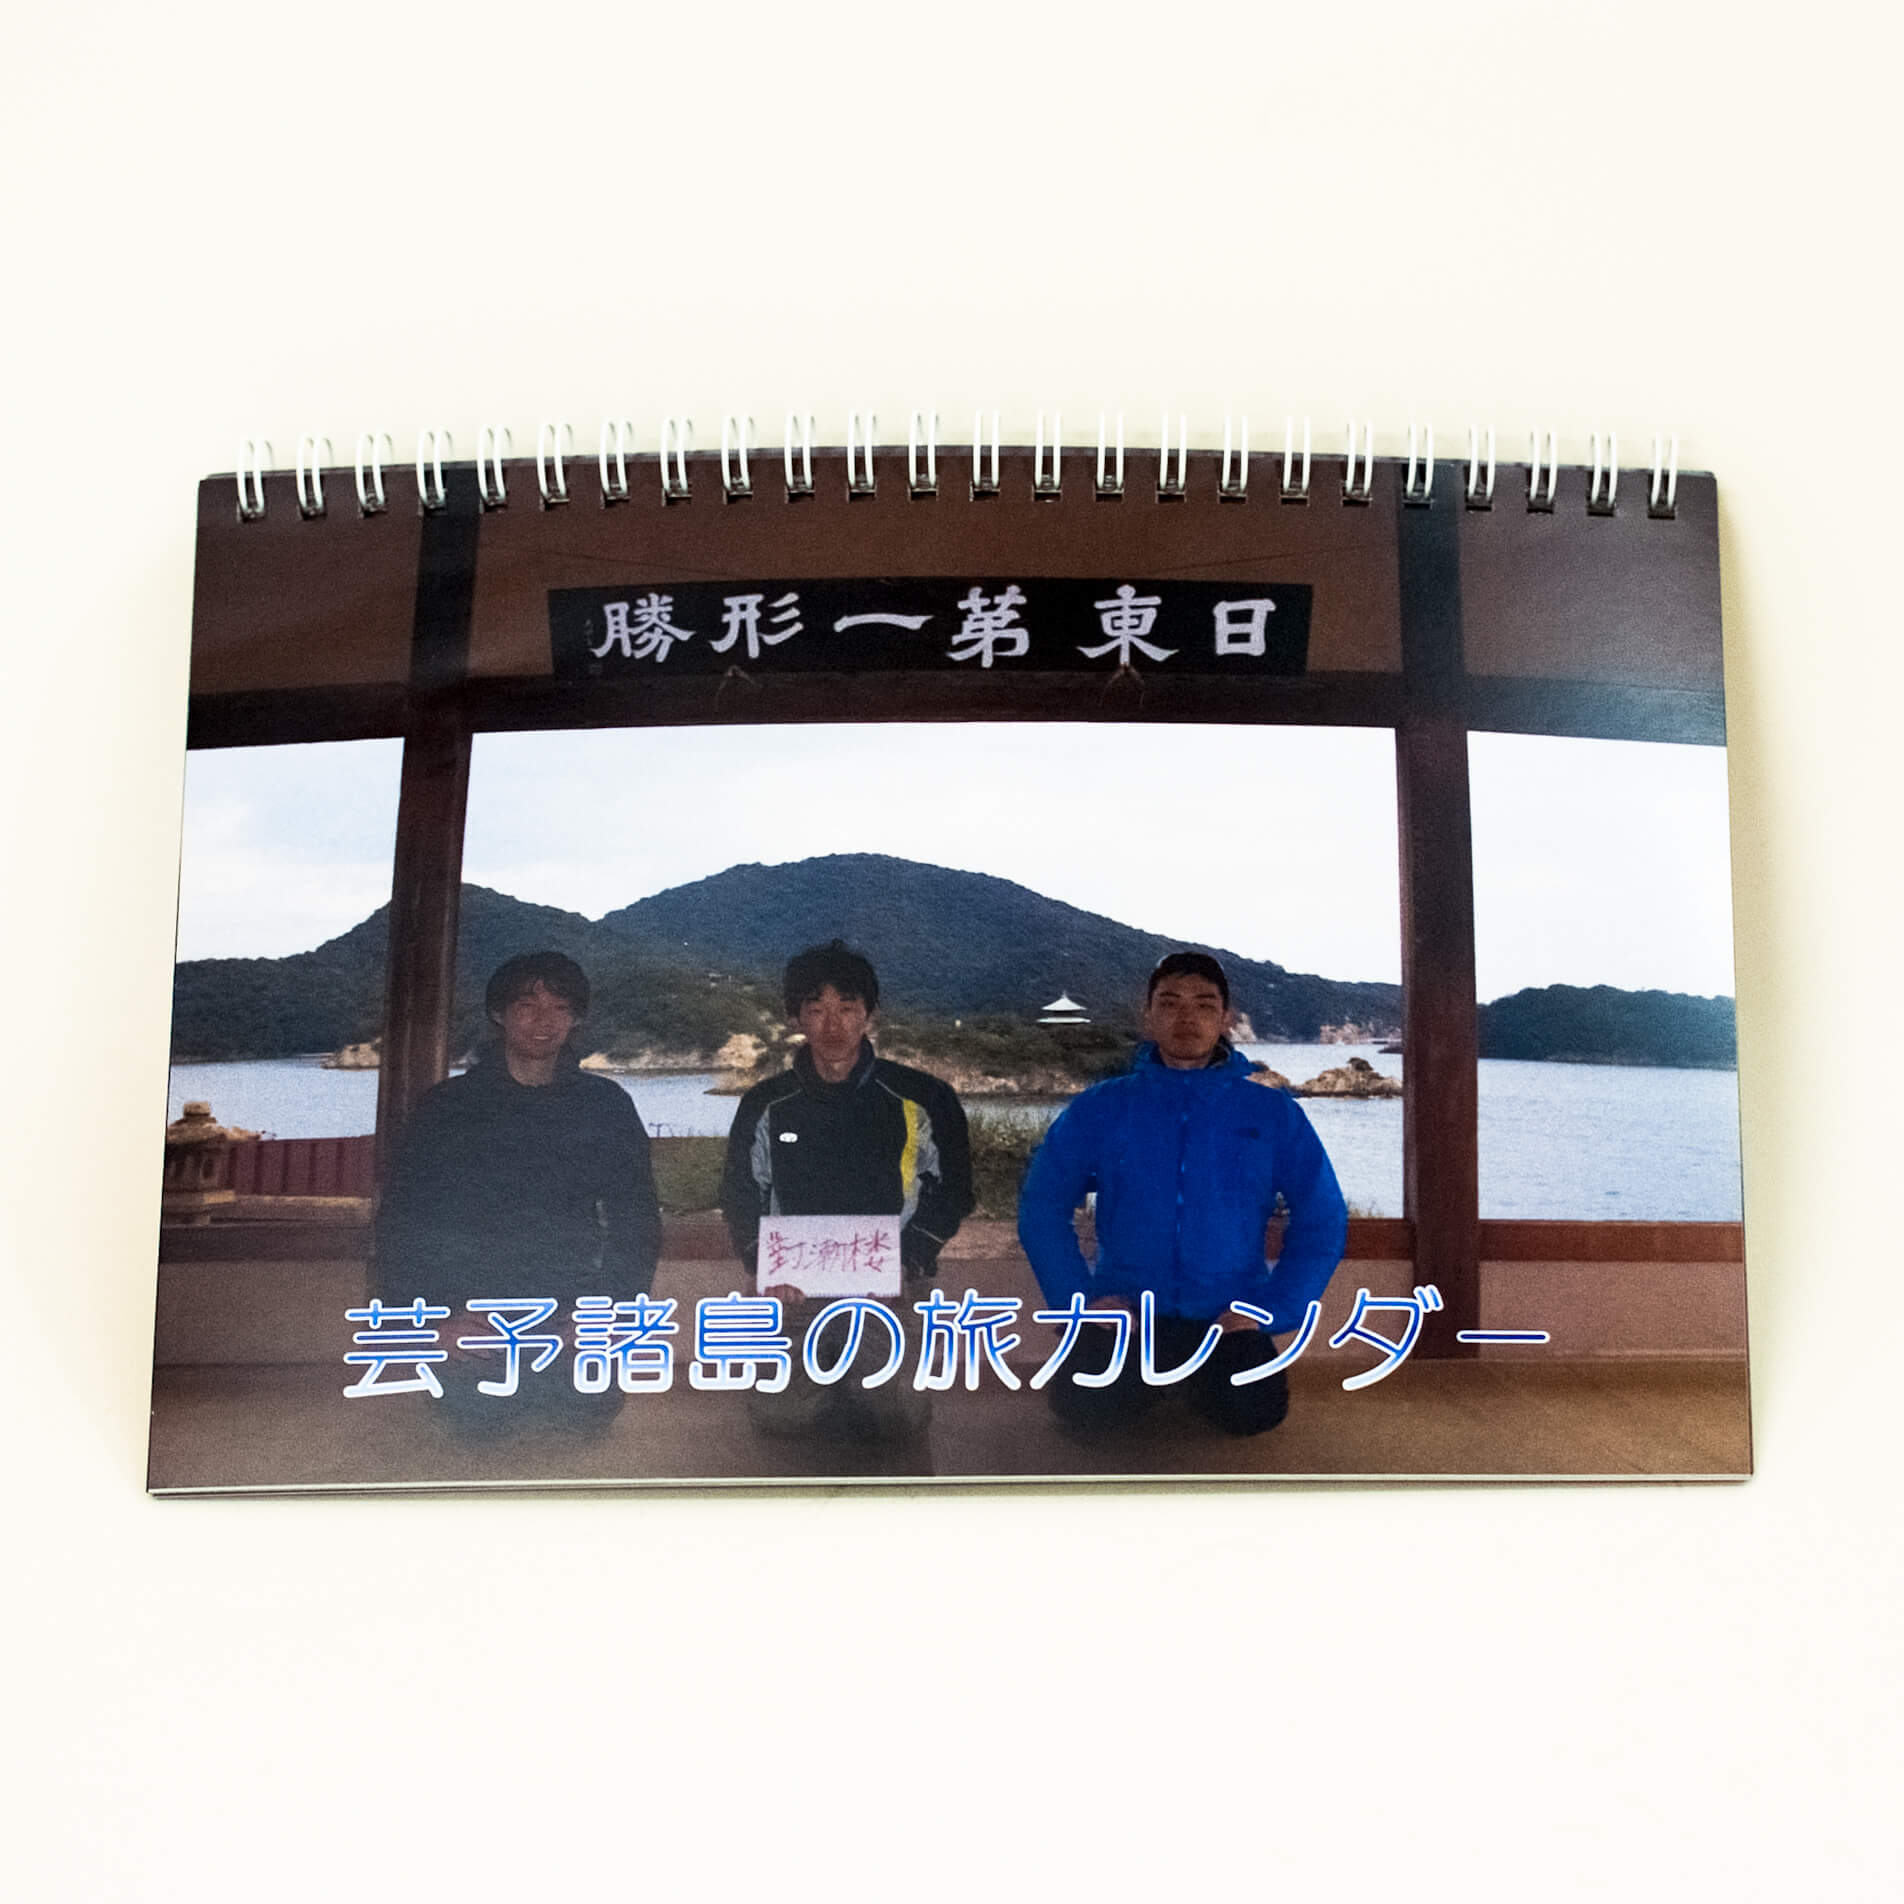 「草田　知典 様」製作のリング製本冊子